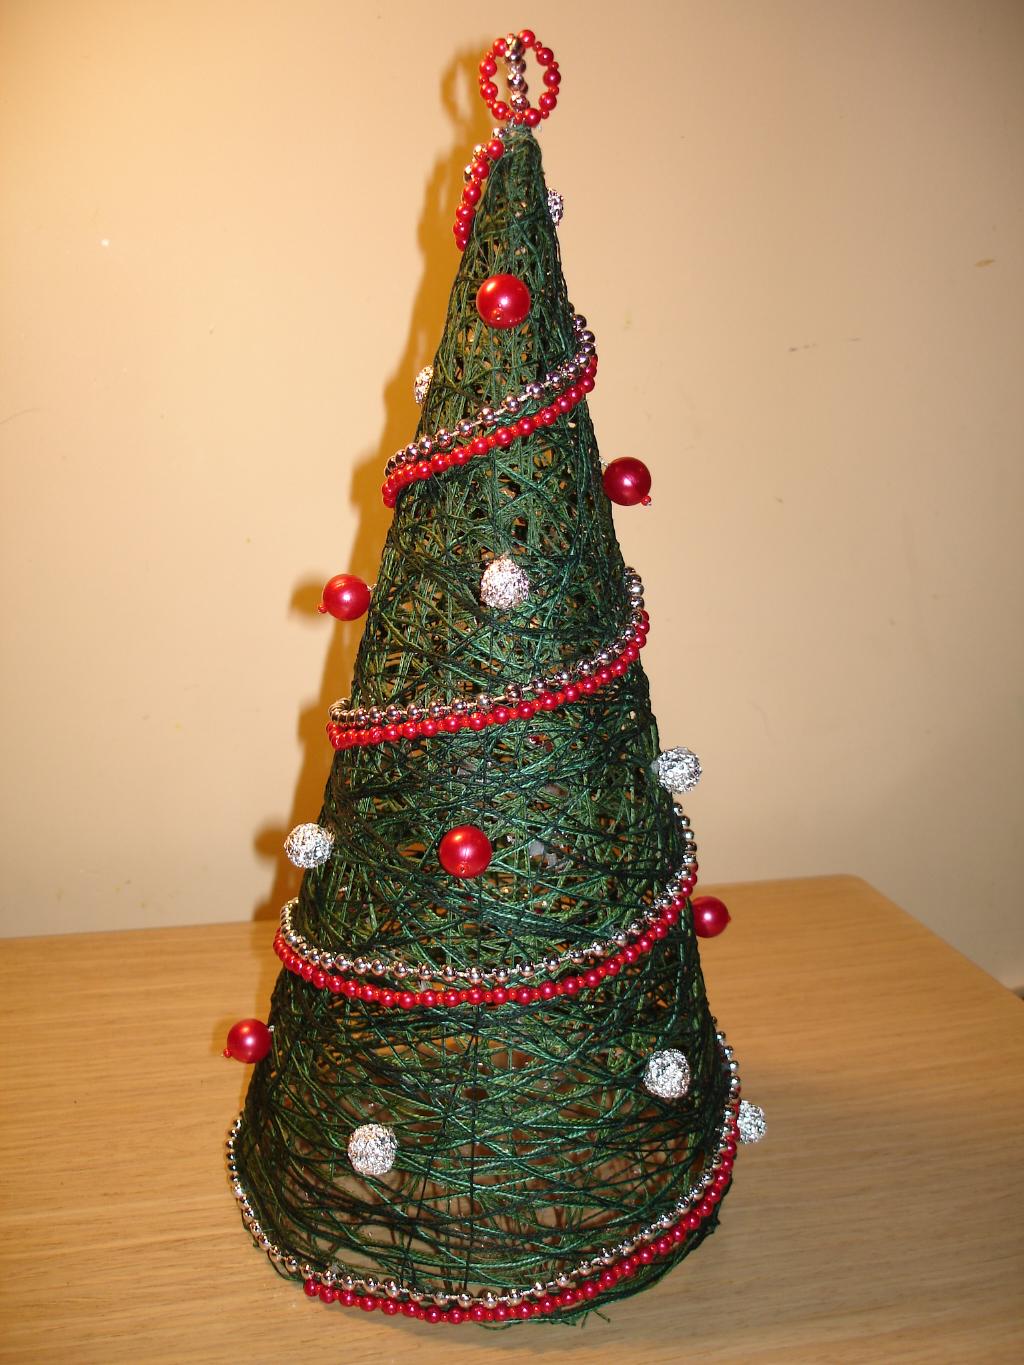 l'idea di creare un bellissimo albero di Natale di carta con le tue mani